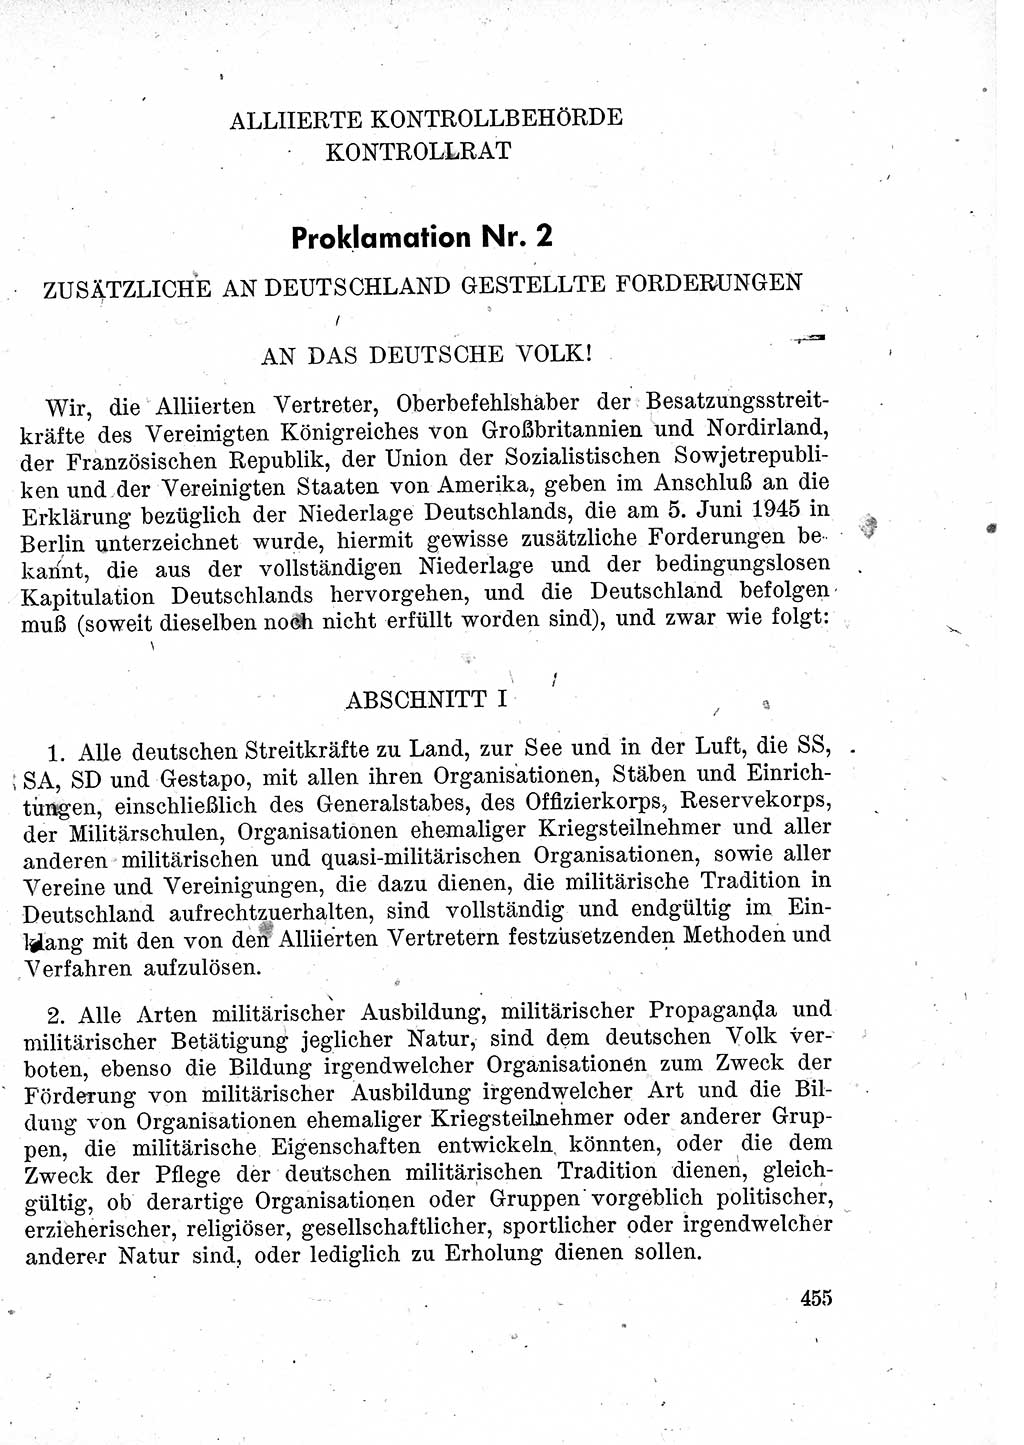 Das Recht der Besatzungsmacht (Deutschland), Proklamationen, Deklerationen, Verordnungen, Gesetze und Bekanntmachungen 1947, Seite 455 (R. Bes. Dtl. 1947, S. 455)